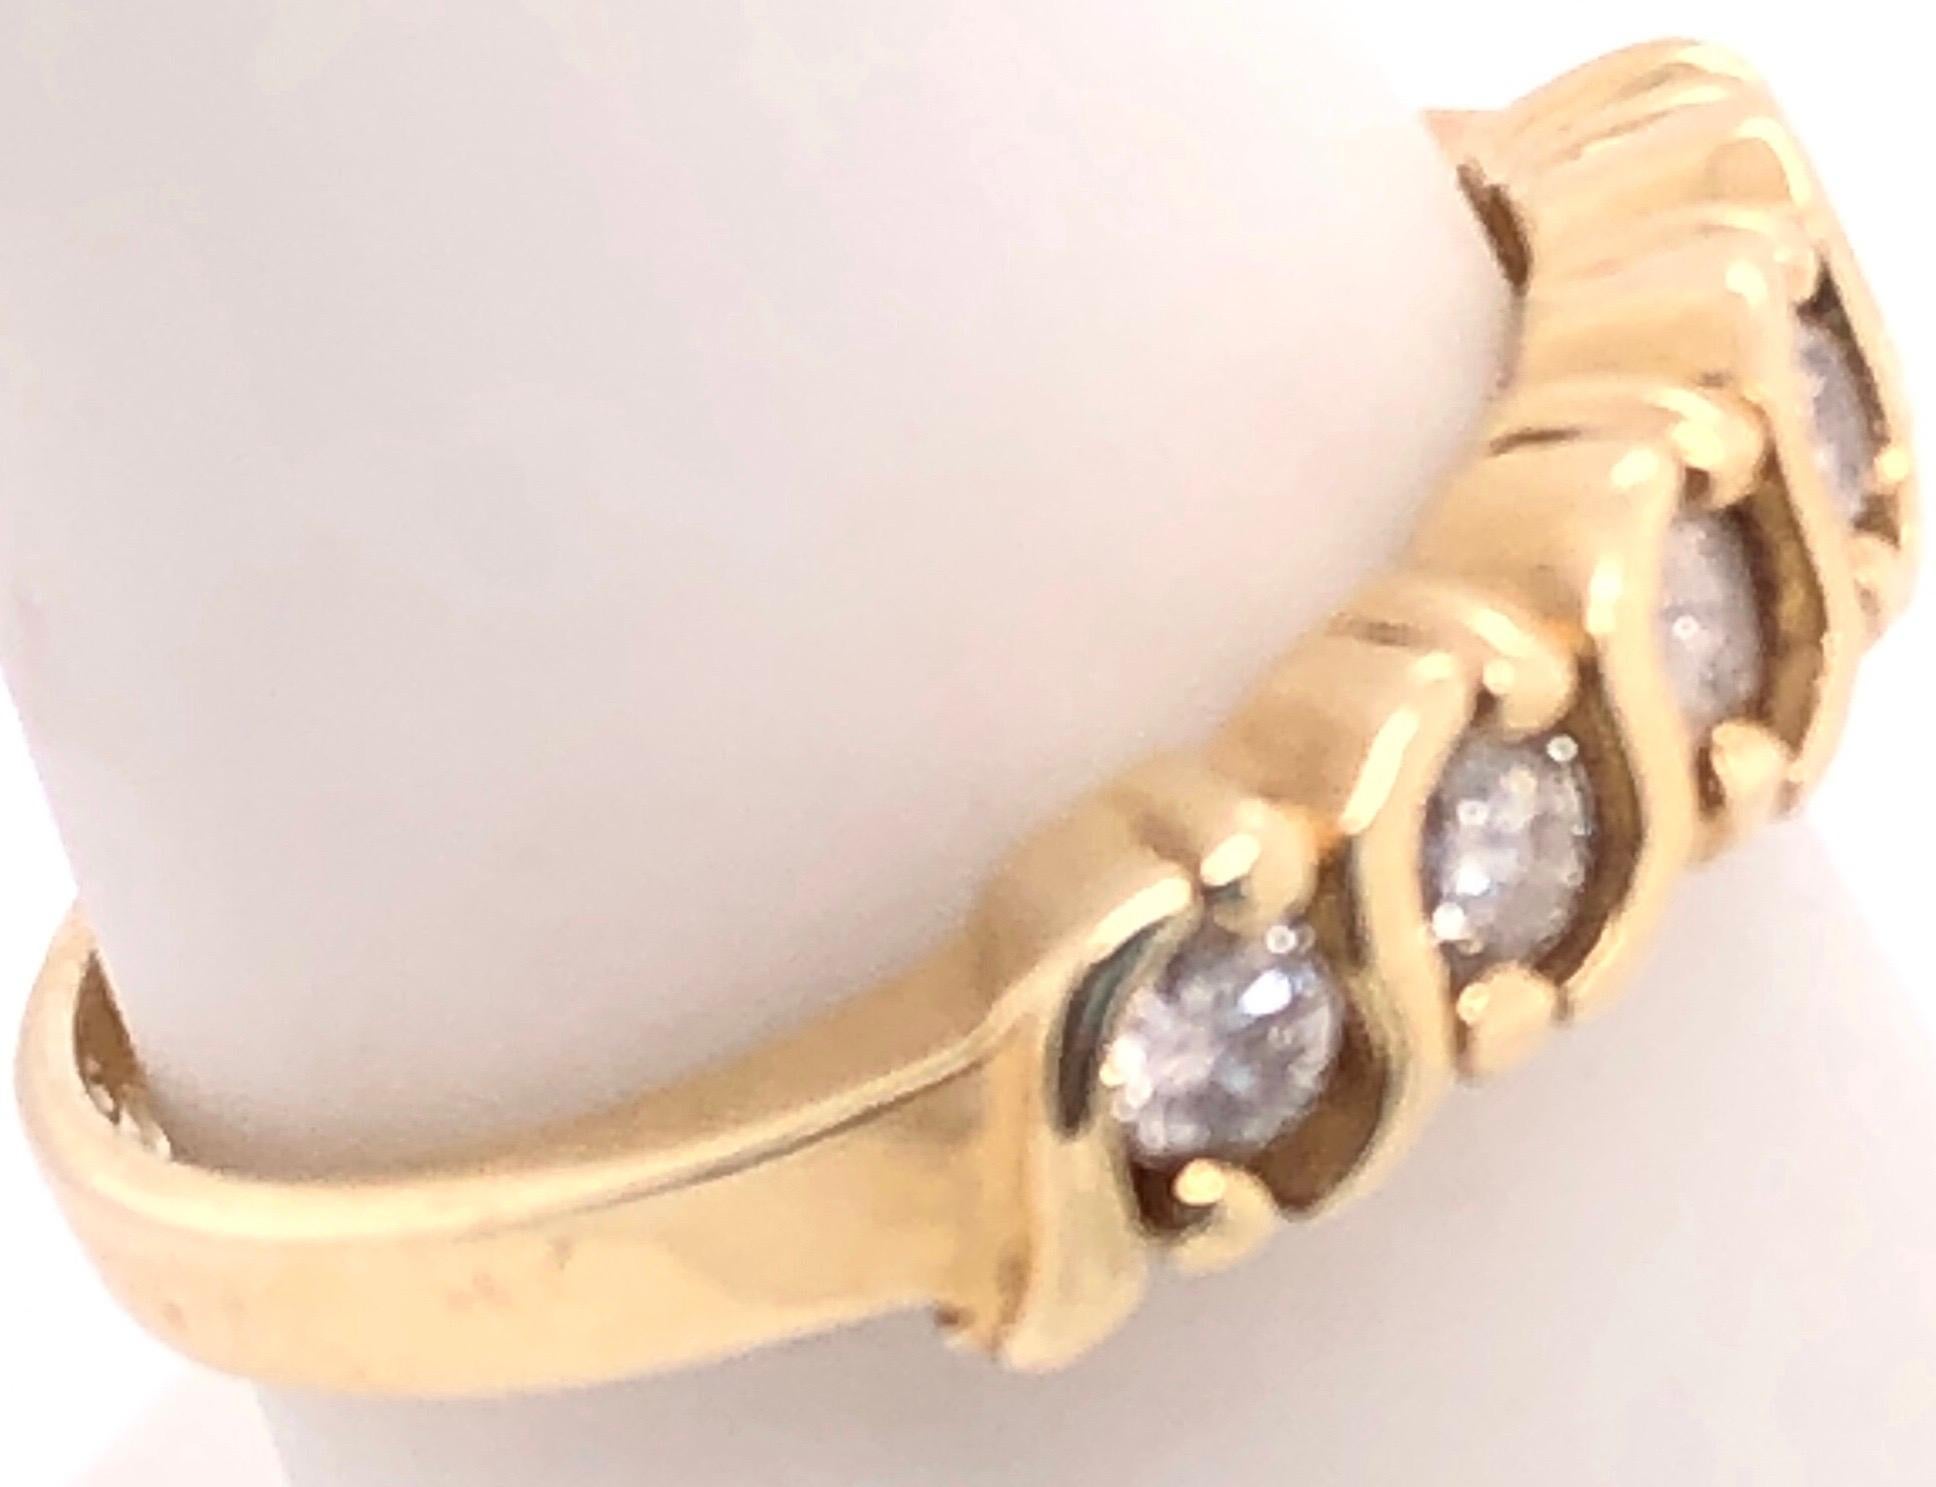 14 Karat Gelbgold Fashion Ring mit Diamanten .
0.50 Gesamtgewicht der Diamanten.
Größe 6.5
3.28 Gramm Gesamtgewicht.